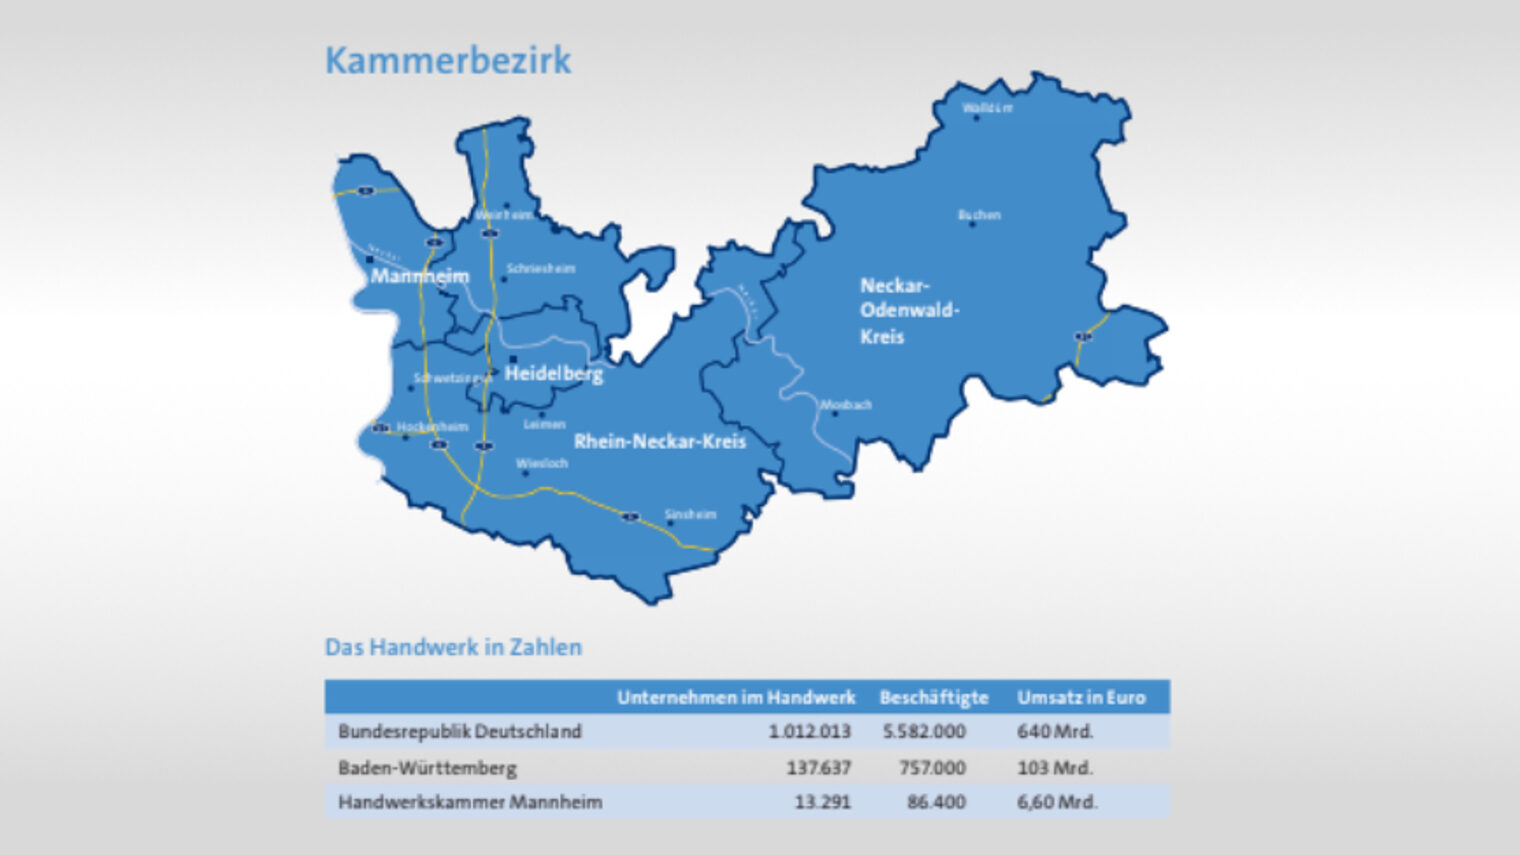 Das Handwerk in Zahlen mit Landkarte vom Kammerbezirk. 